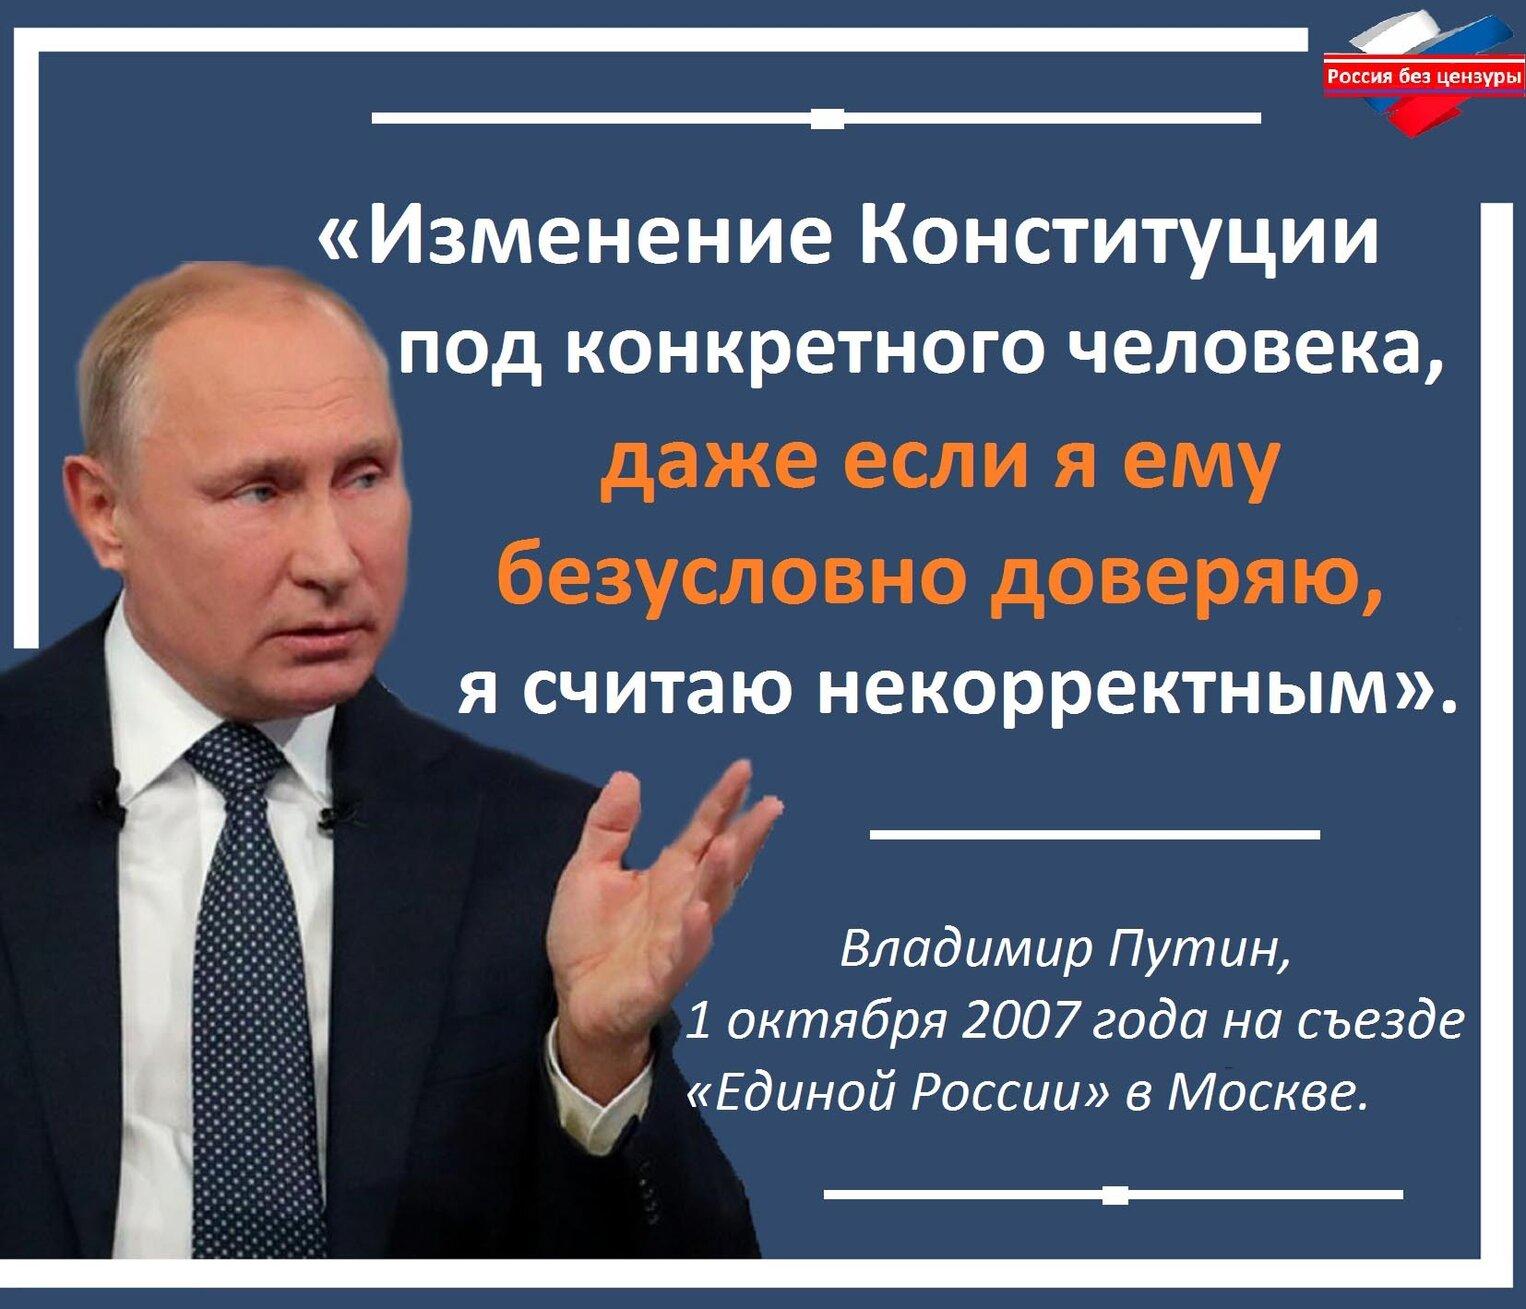 Президентская поправка. Цитата Путина про Конституцию. Законы против народа.